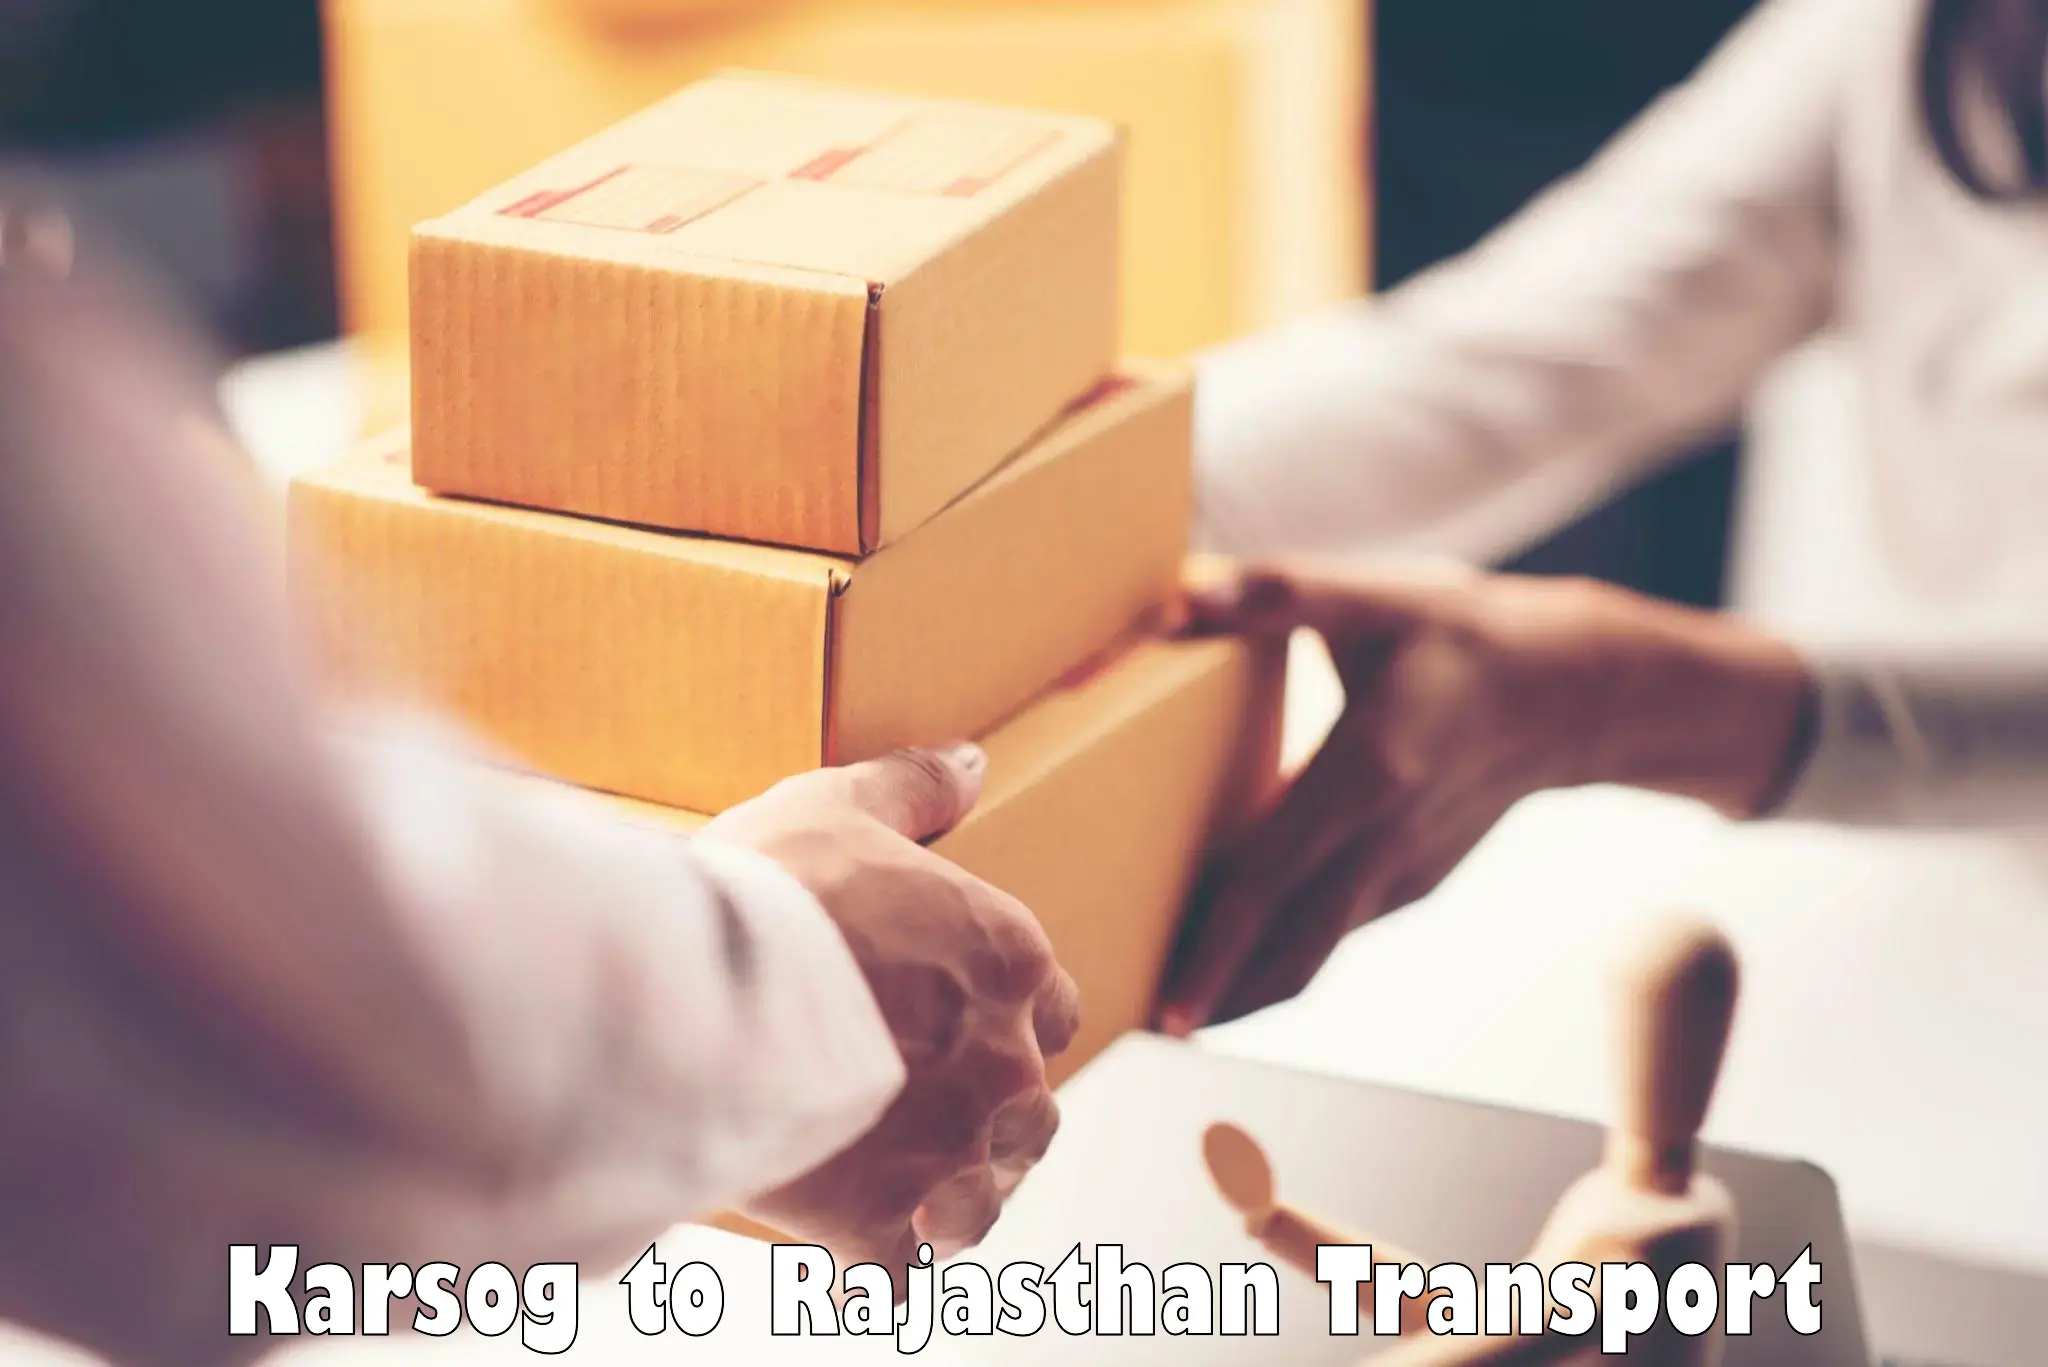 Nationwide transport services in Karsog to Jaipur